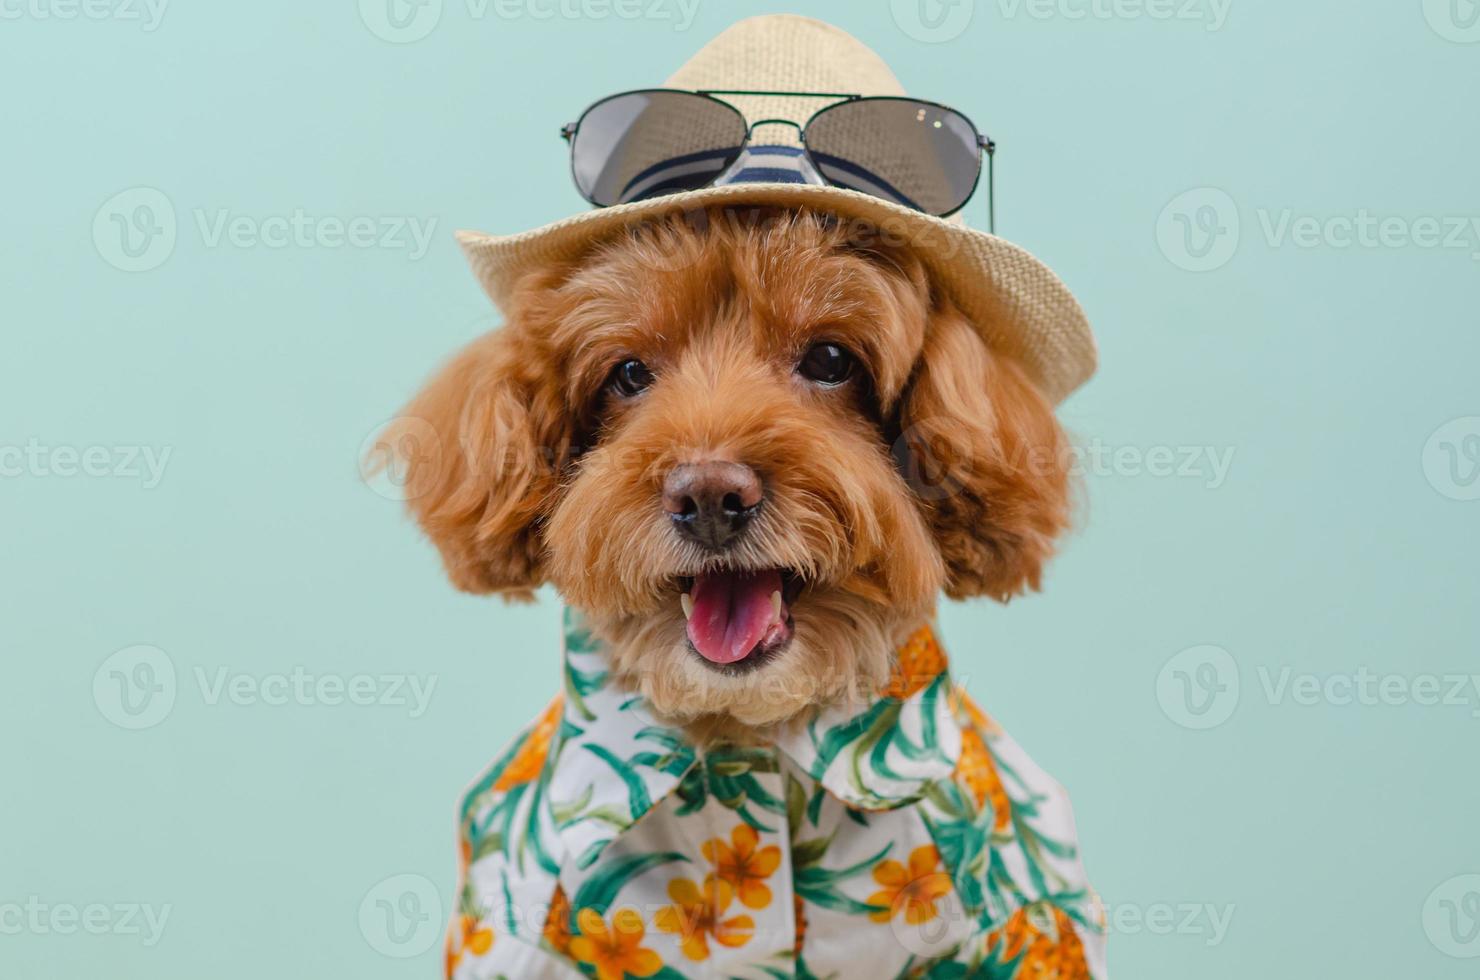 chien caniche toy brun souriant porte un chapeau avec des lunettes de soleil sur le dessus et une robe hawaïenne photo